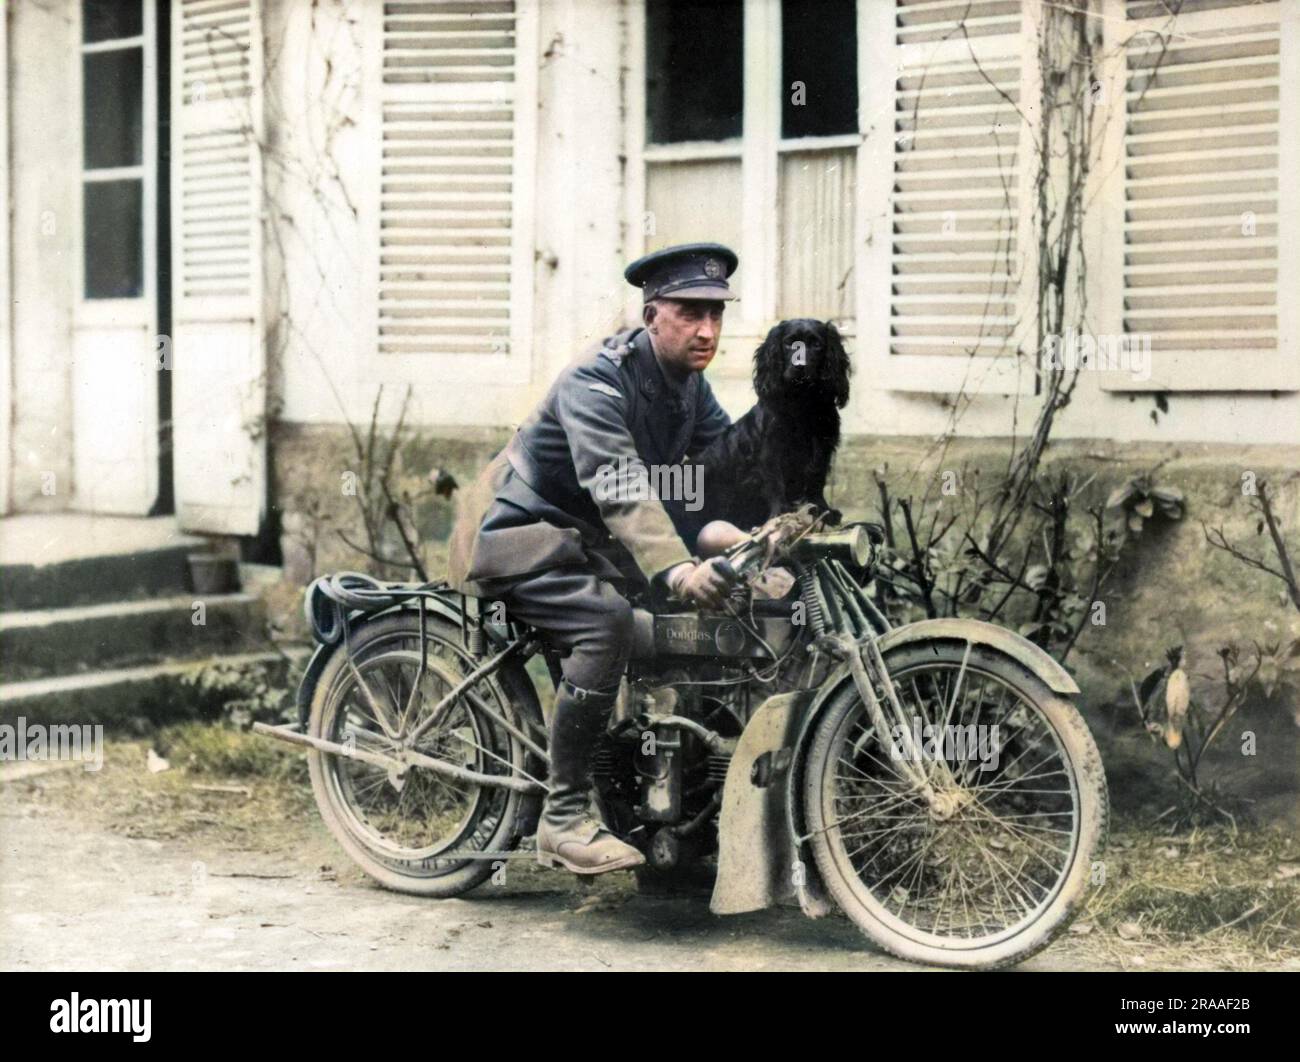 Ein Offizier des Panzerkorps auf einem Douglas-Motorrad mit einem Spanielhund (Stunter, das Panzerkorps-Maskottchen) in Neulette, Nordfrankreich, gegen Ende des Ersten Weltkriegs. Datum: 03. Mai 18 Stockfoto